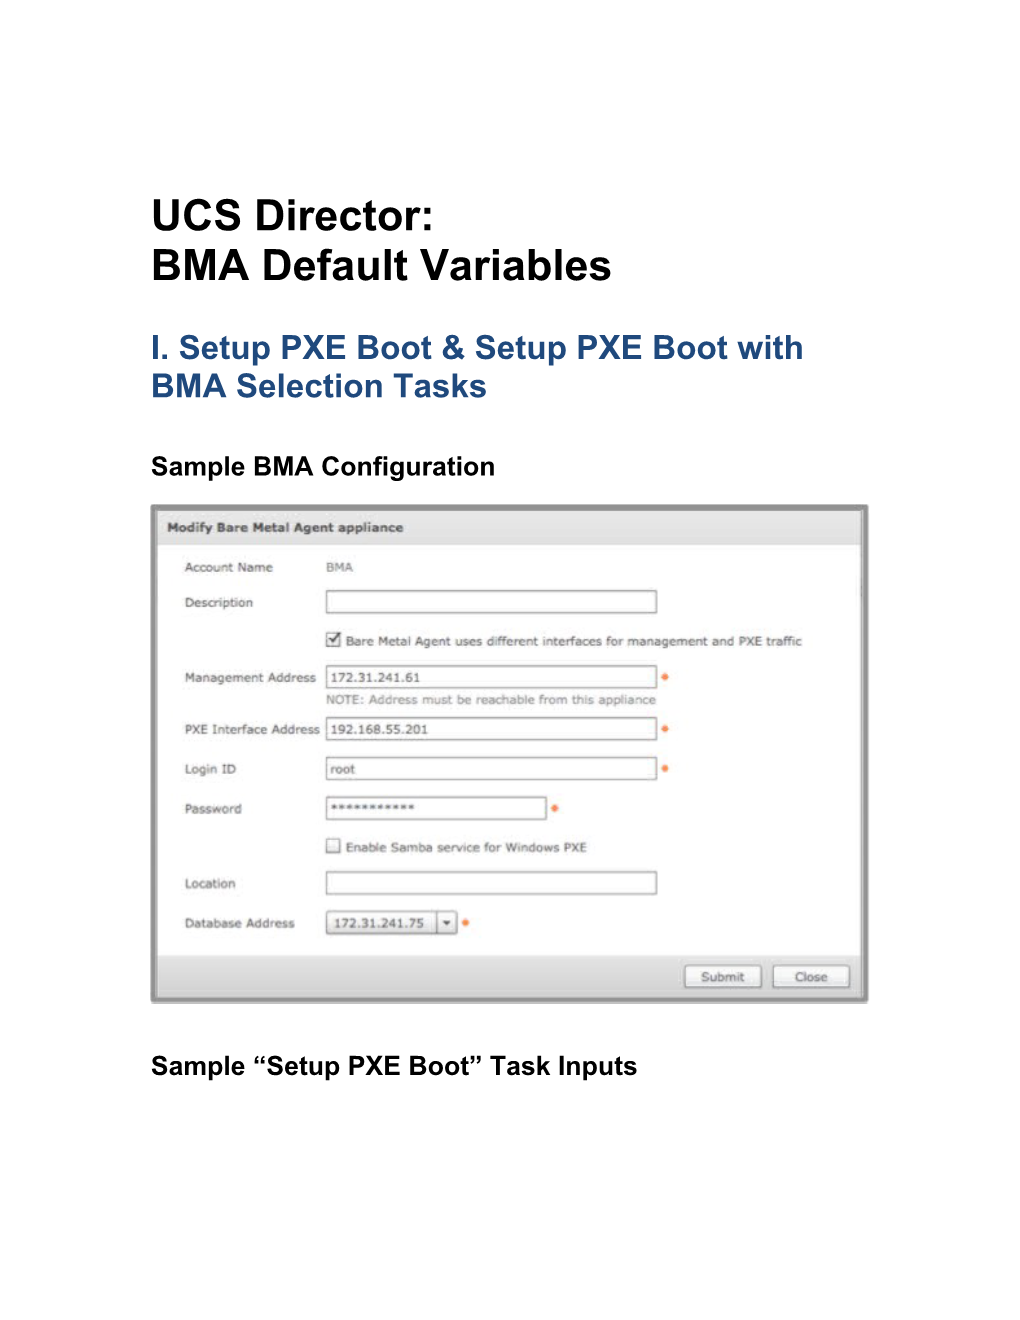 I. Setup PXE Boot & Setup PXE Boot with BMA Selection Tasks